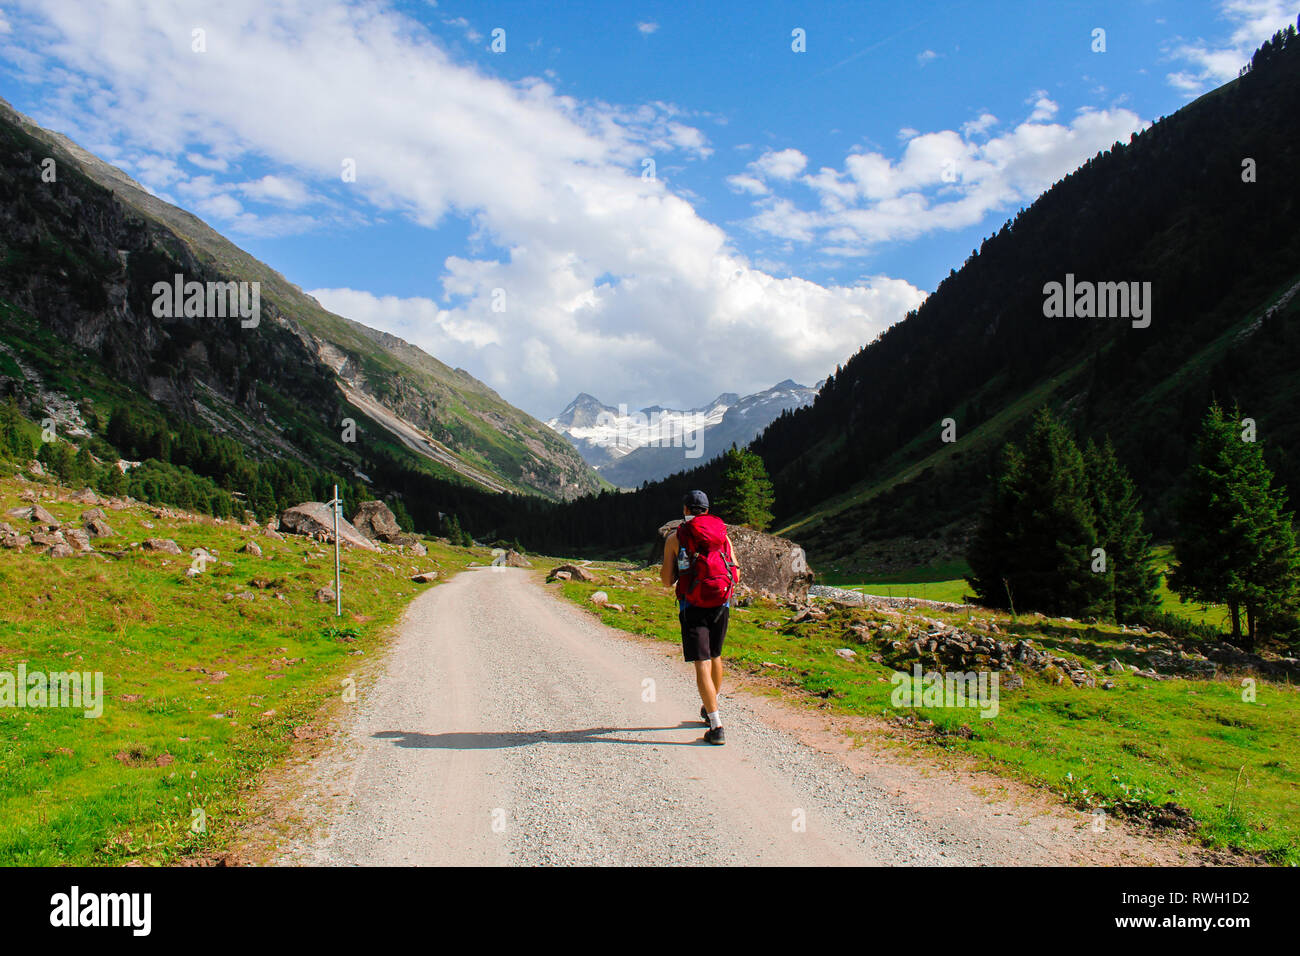 Sulla strada per il vertice Kesskogel, nelle Alpi austriache Foto Stock